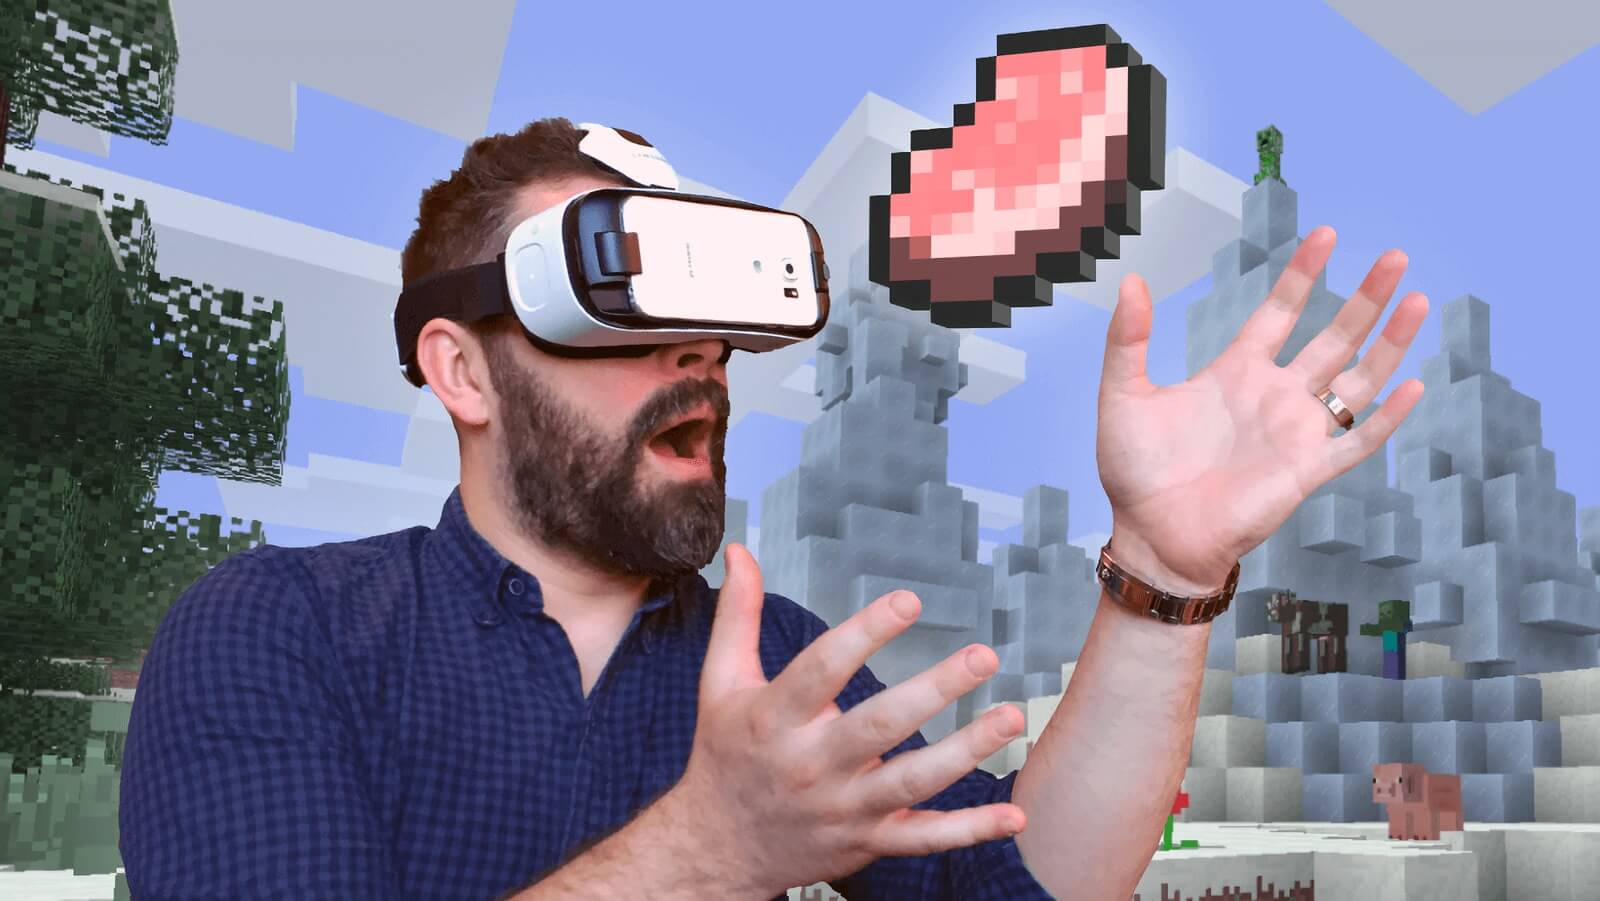 Бесплатные игры для очков виртуальной реальности. Майнкрафт VR. Очки виртуальной реальности. Очки для виртуальной реальности для МАЙНКРАФТА. Майнкрафт в очках виртуальной реальности.